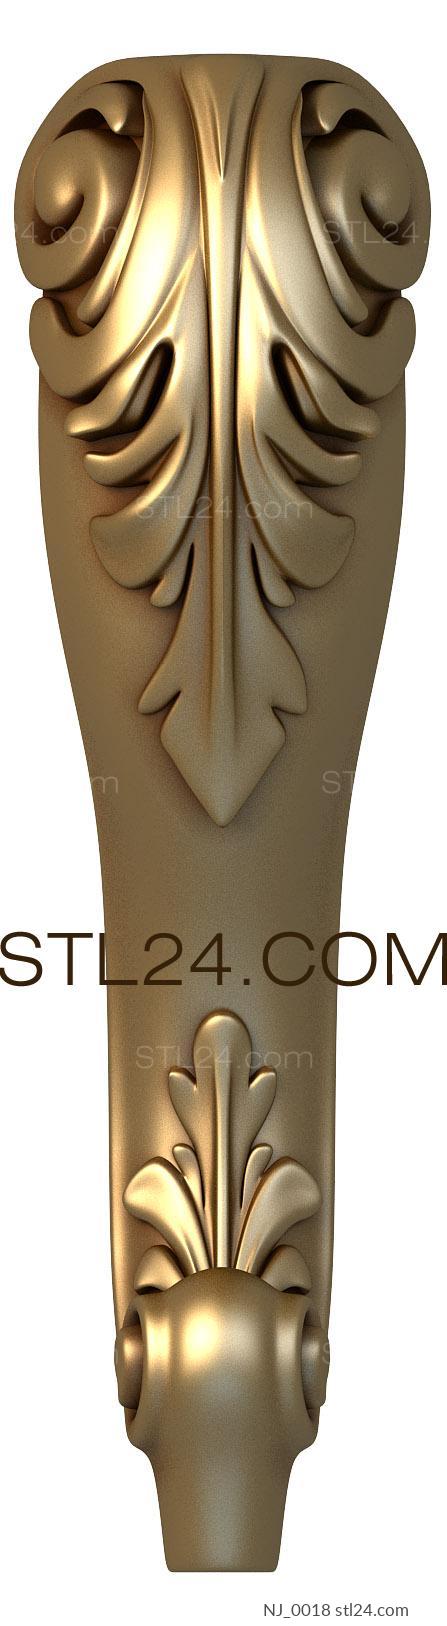 Ножки (NJ_0018) 3D модель для ЧПУ станка